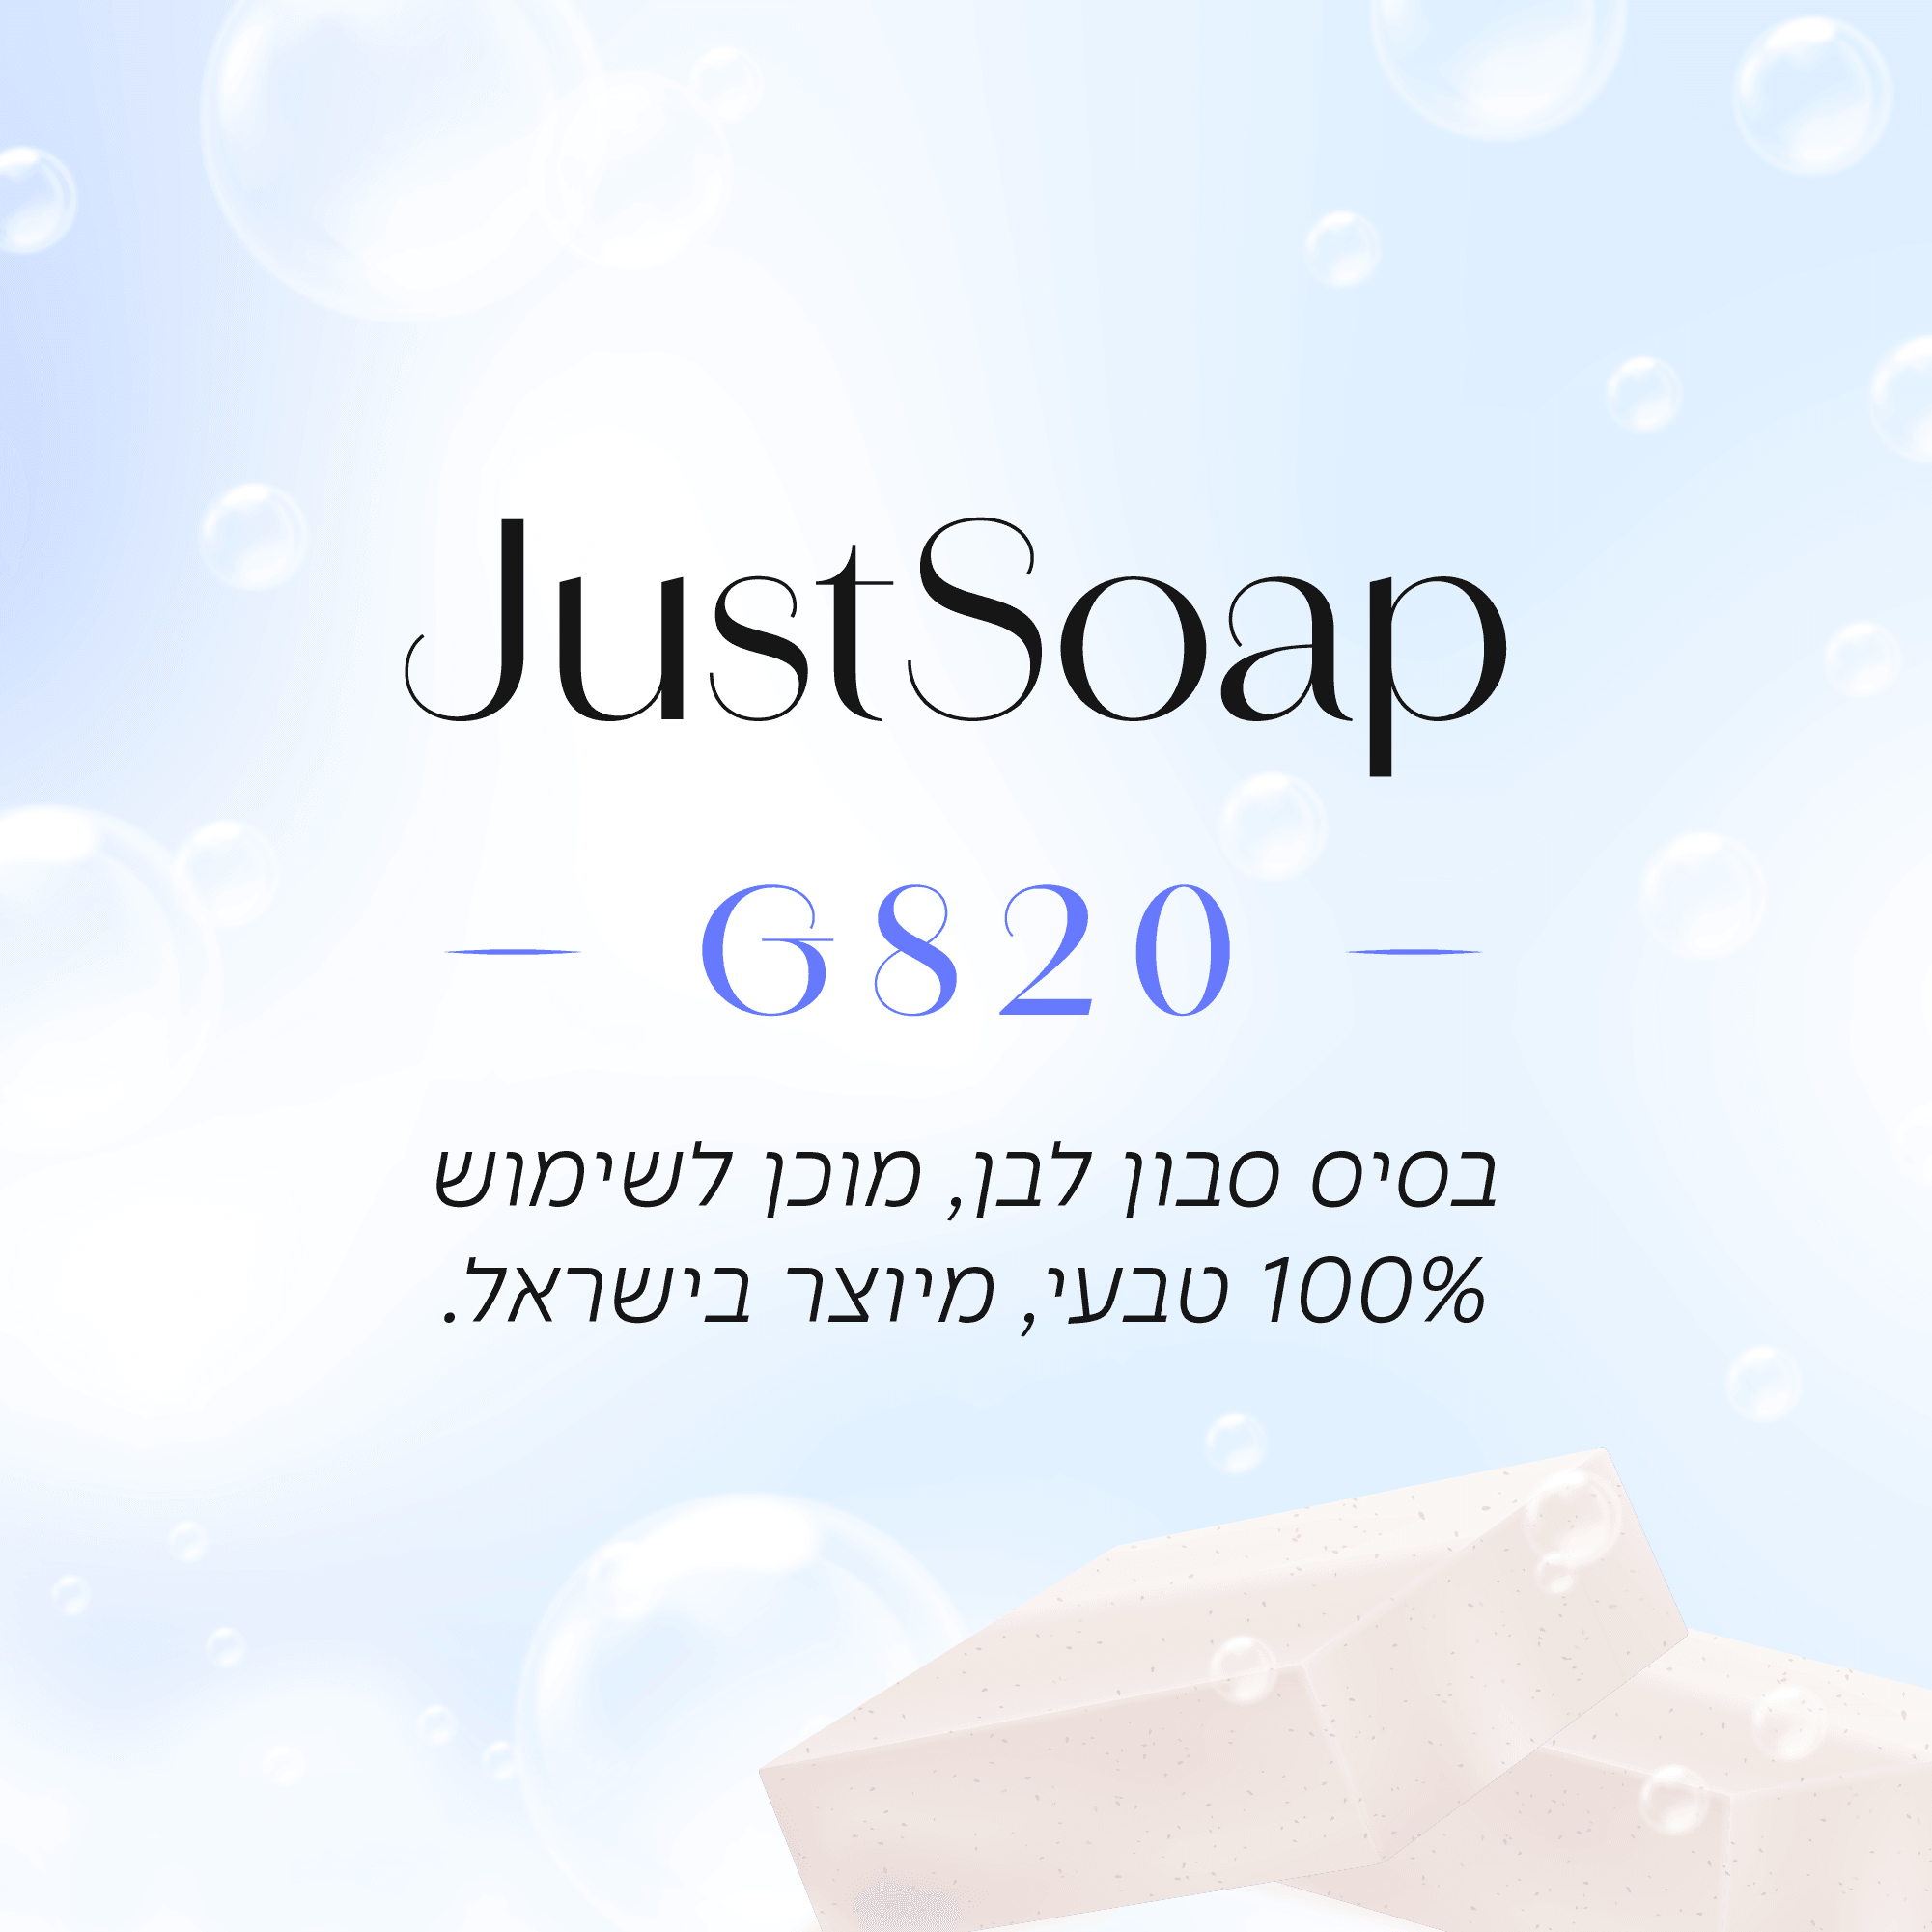 בסיס סבון לבן, G820 מוכן לשימוש בשיטת Melt & Pour - שיאננדה